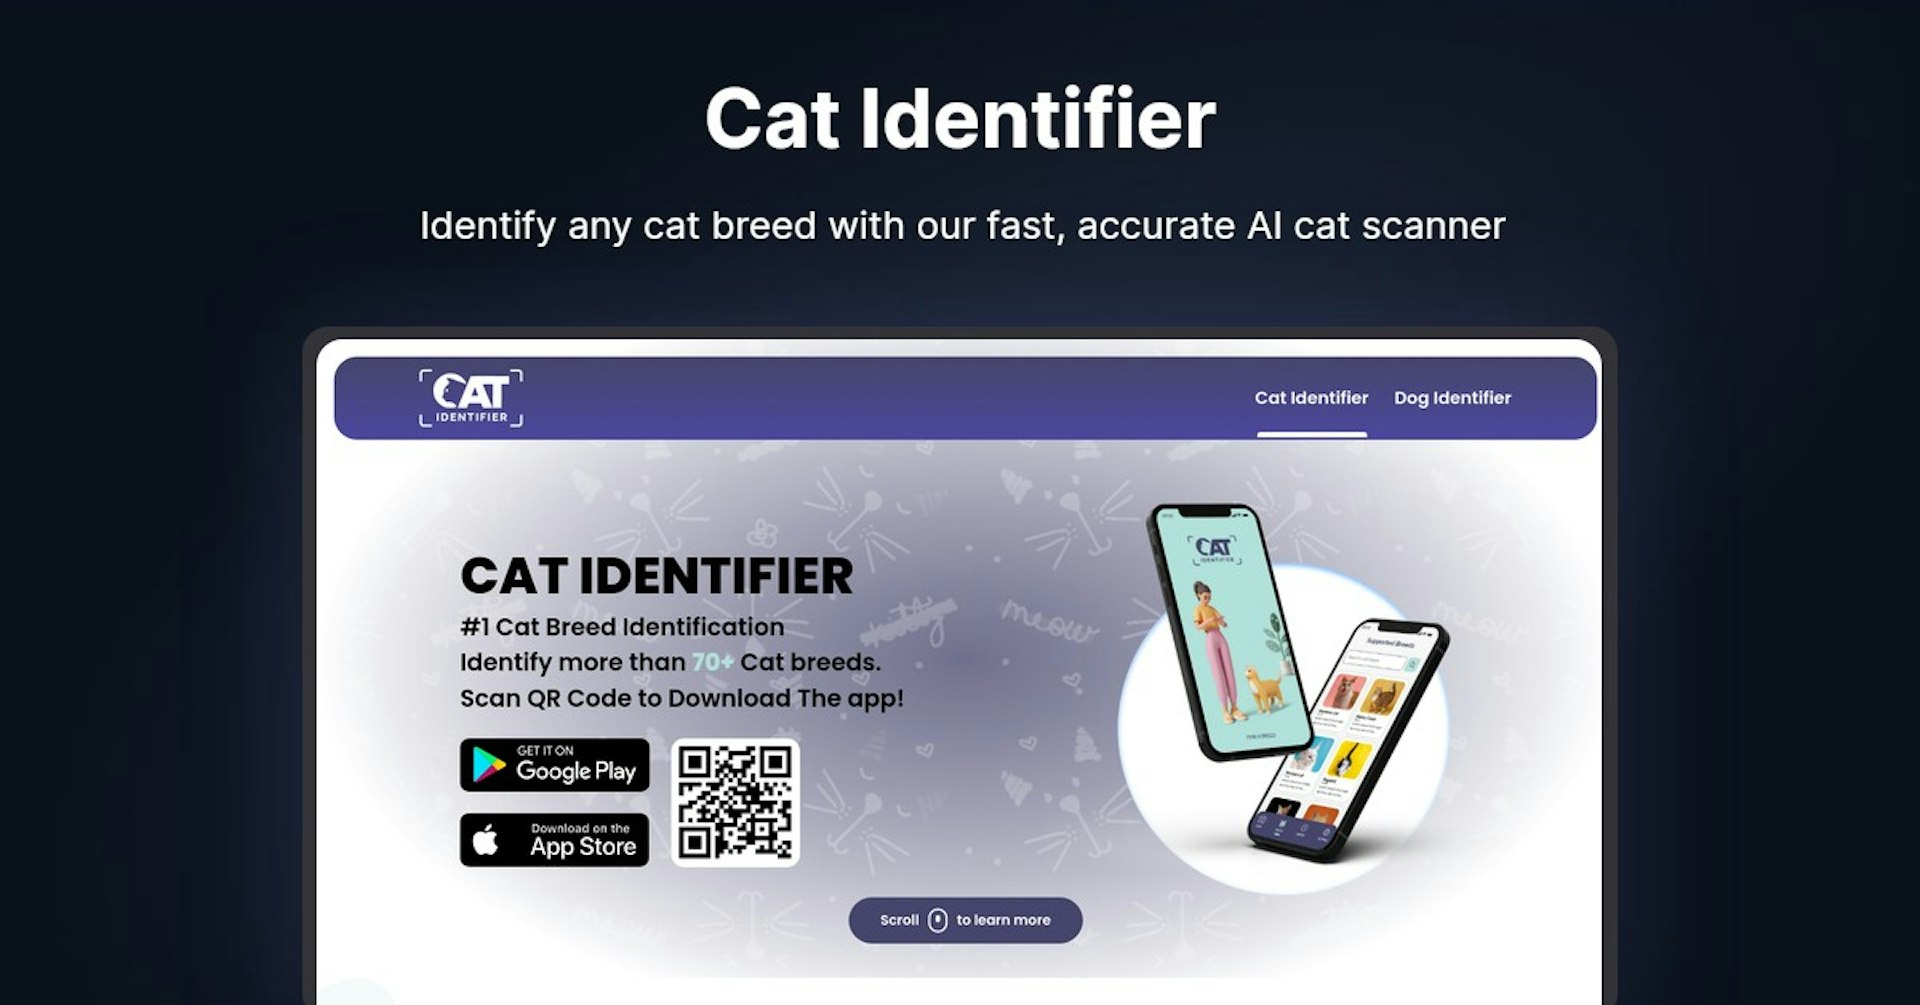 Cat Identifier